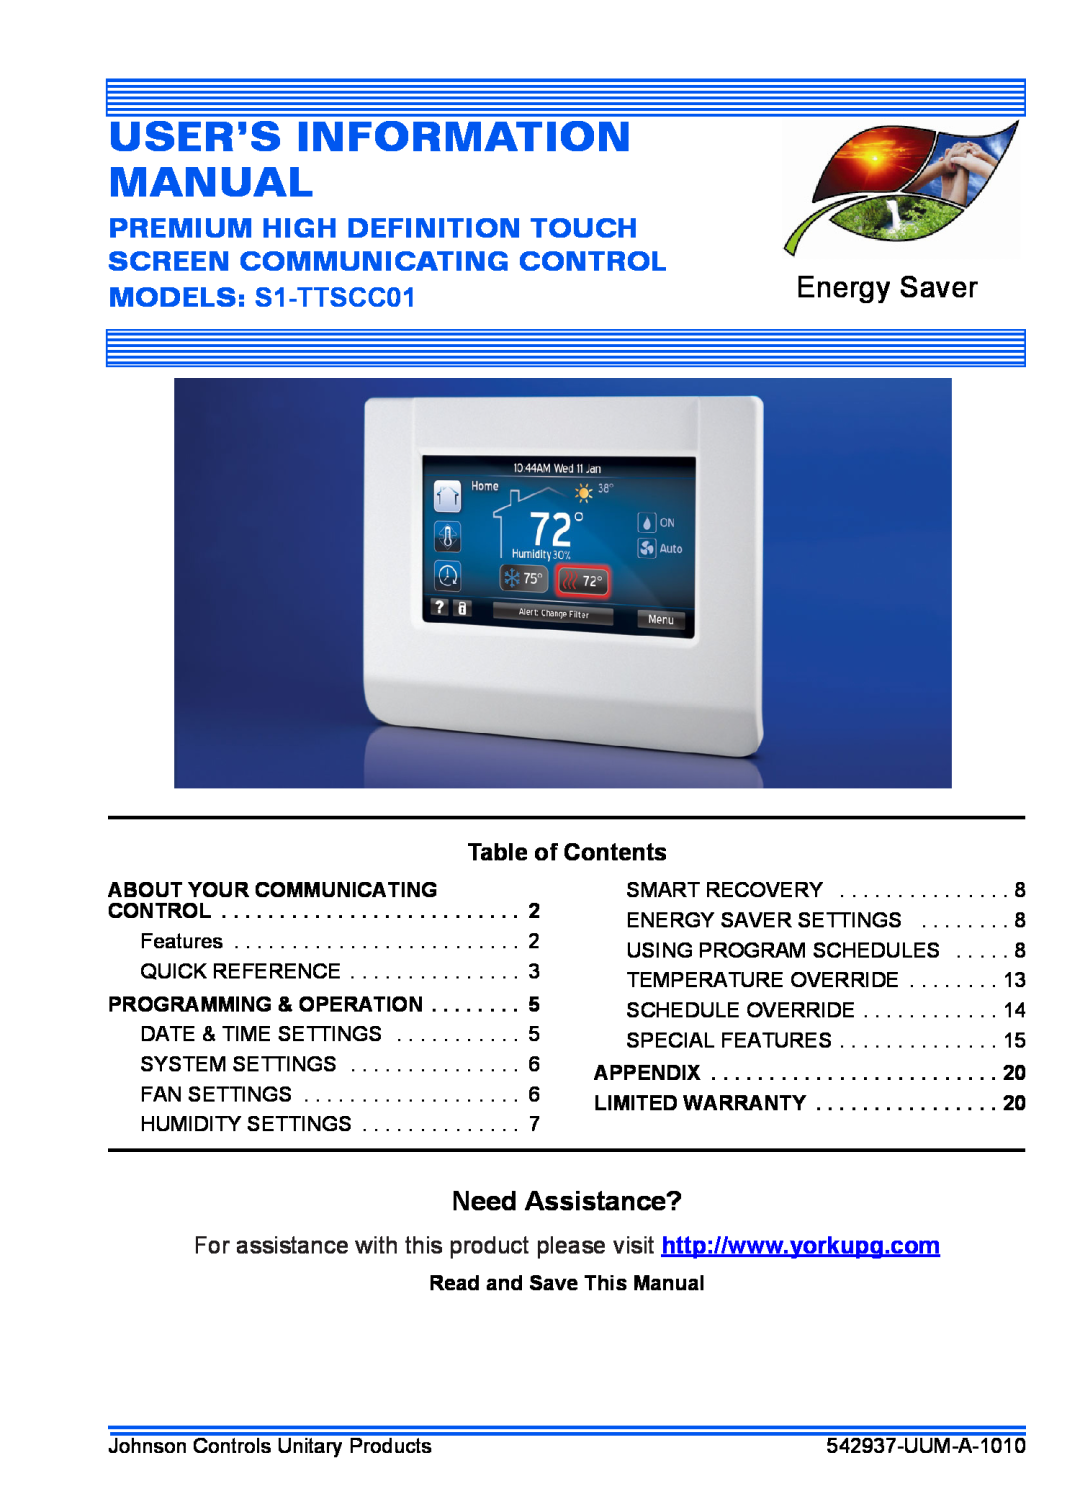 Johnson Controls S1-TTSCC01 warranty Energy Saver, Description, Warranty, Features & Benefits, Technical Guide 